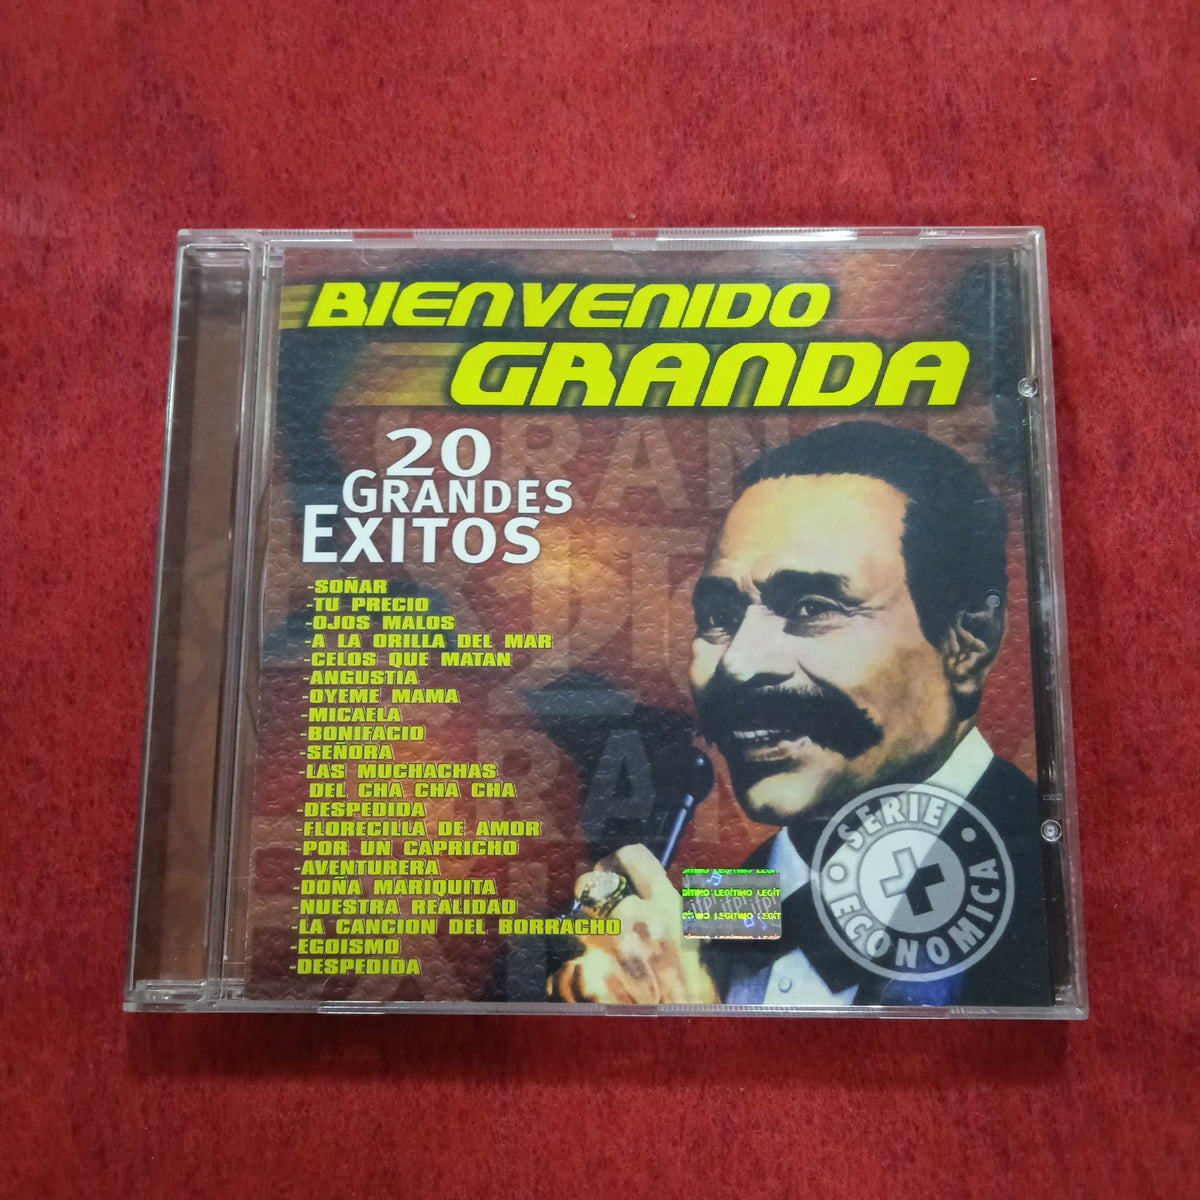 Bienvenido Granda Versiones Originales 3 CD's NEW! Sealed! FREE SHIPPING!